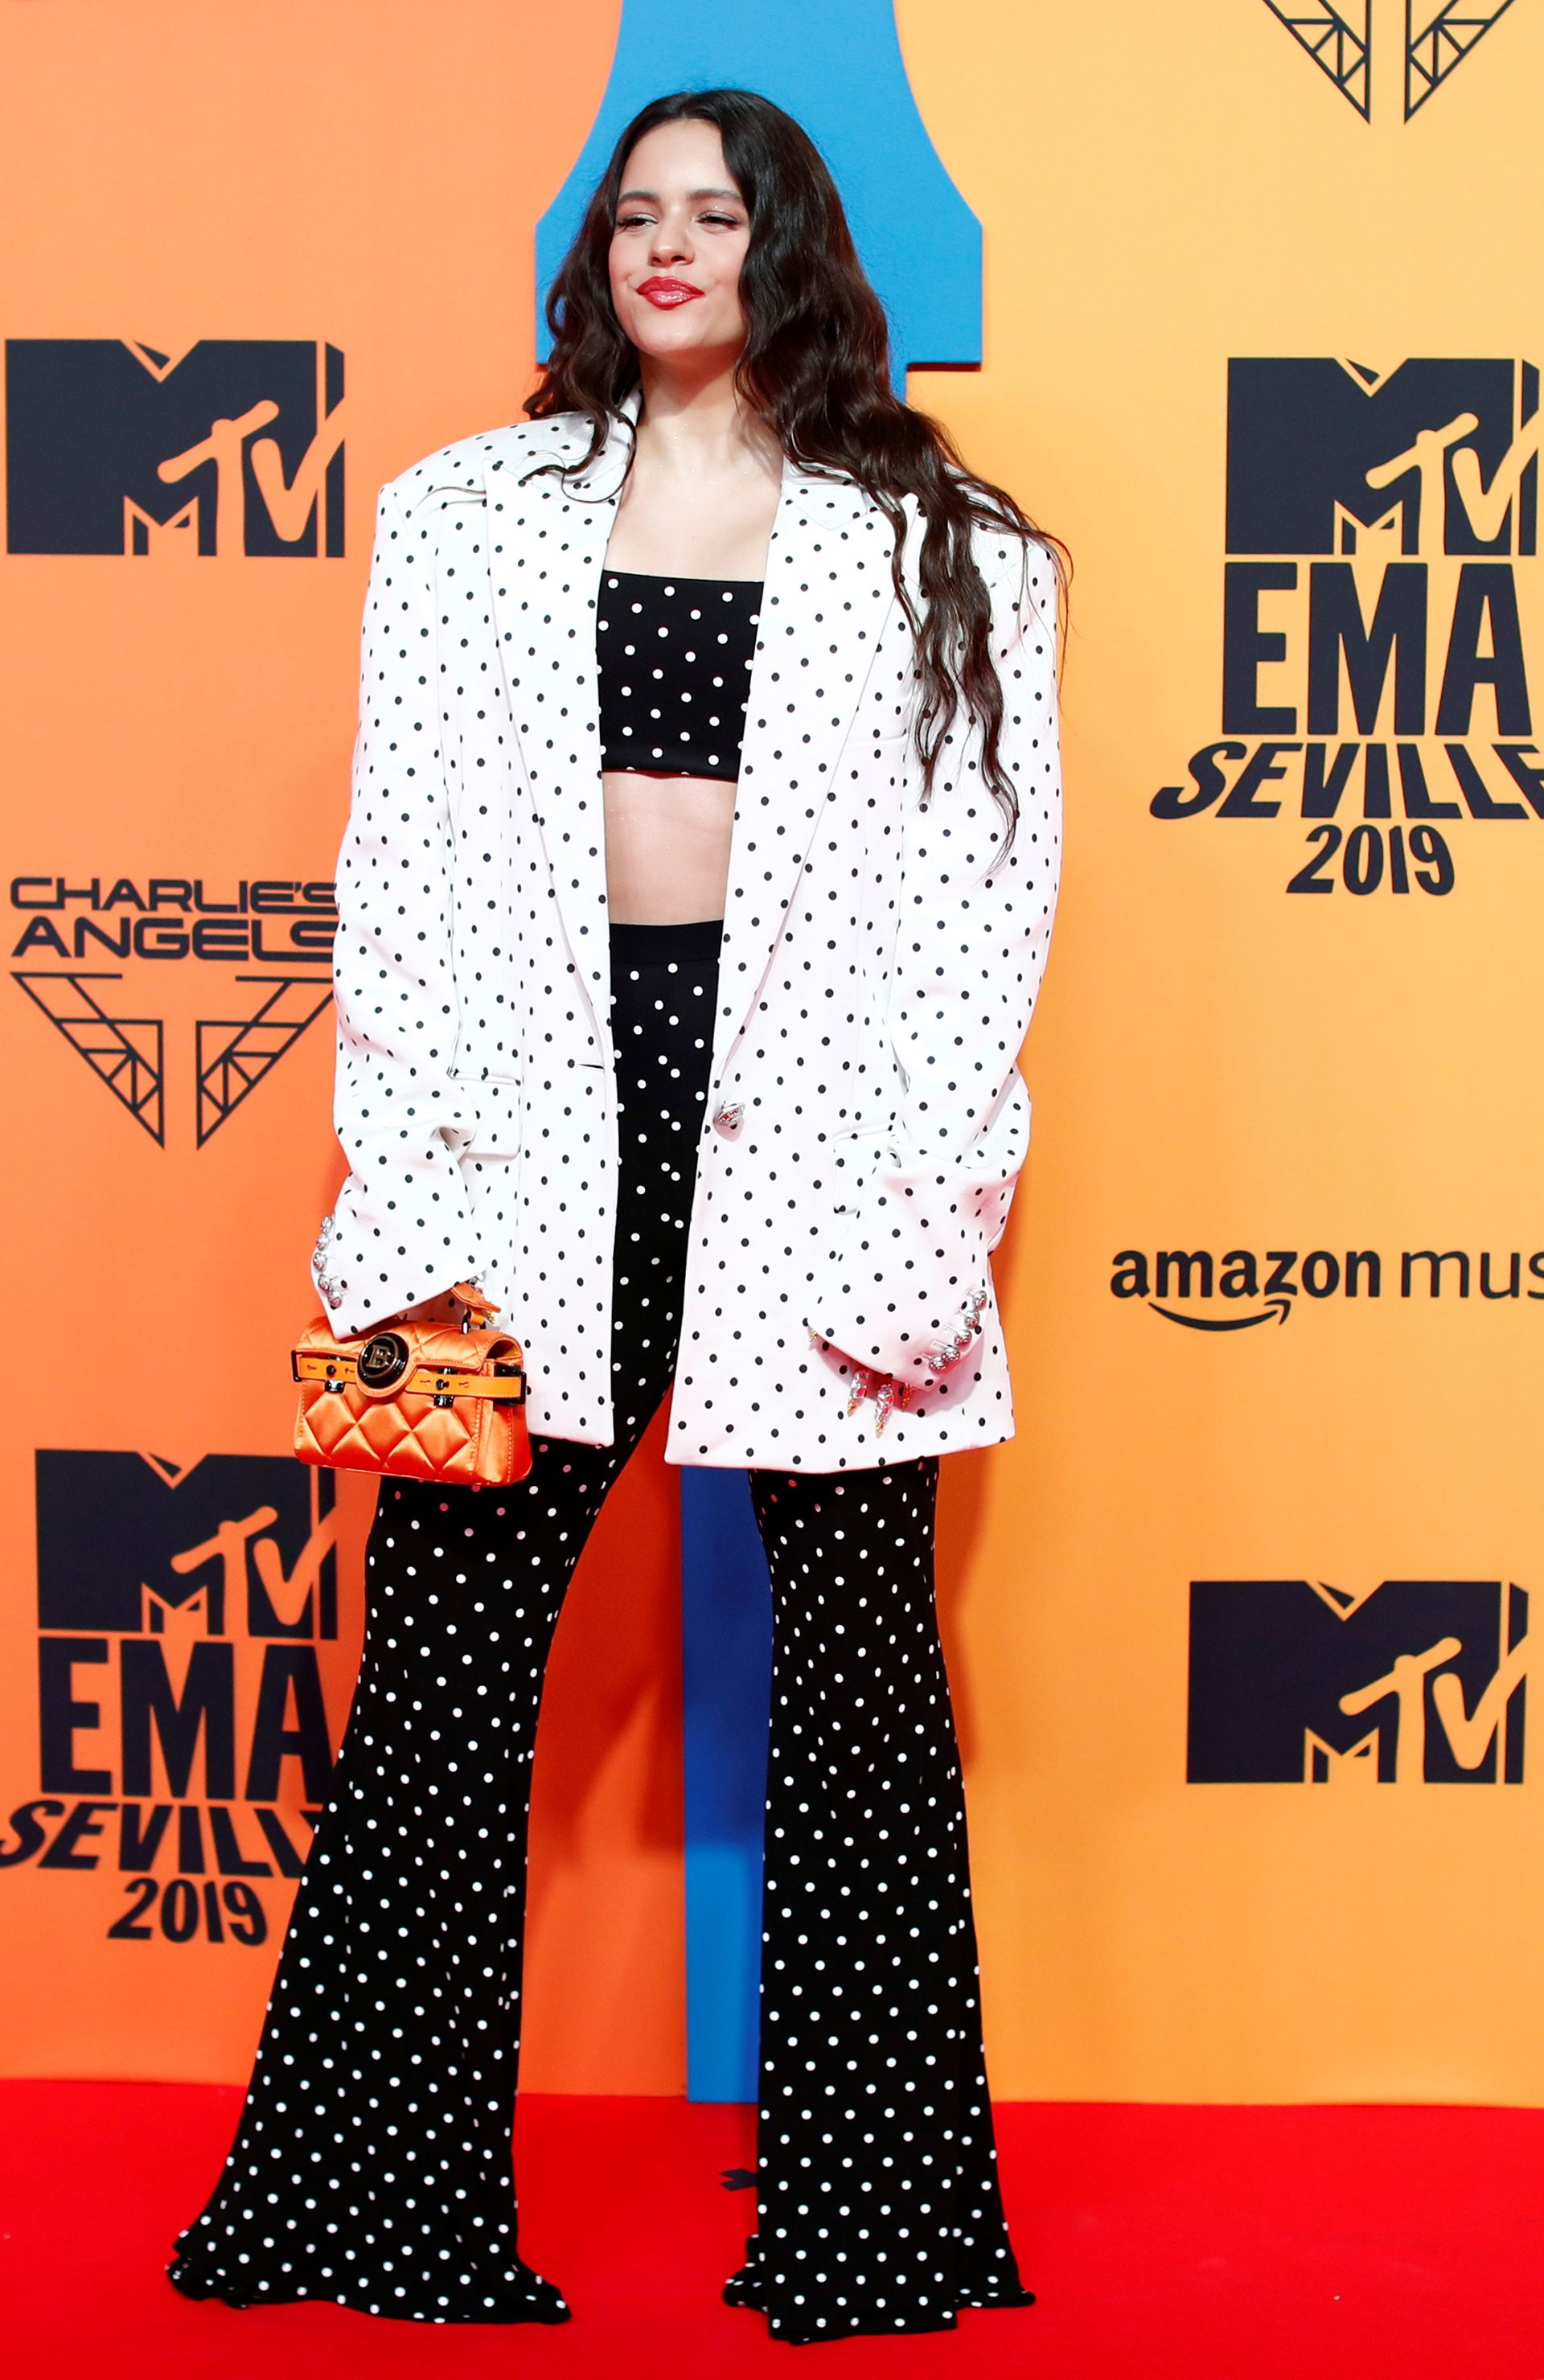 Rosalía compite por cuatro premios en los EMAs 2019. Junto a artistas como Liam Gallagher y Dua Lipa se presentará sobre el escenario 